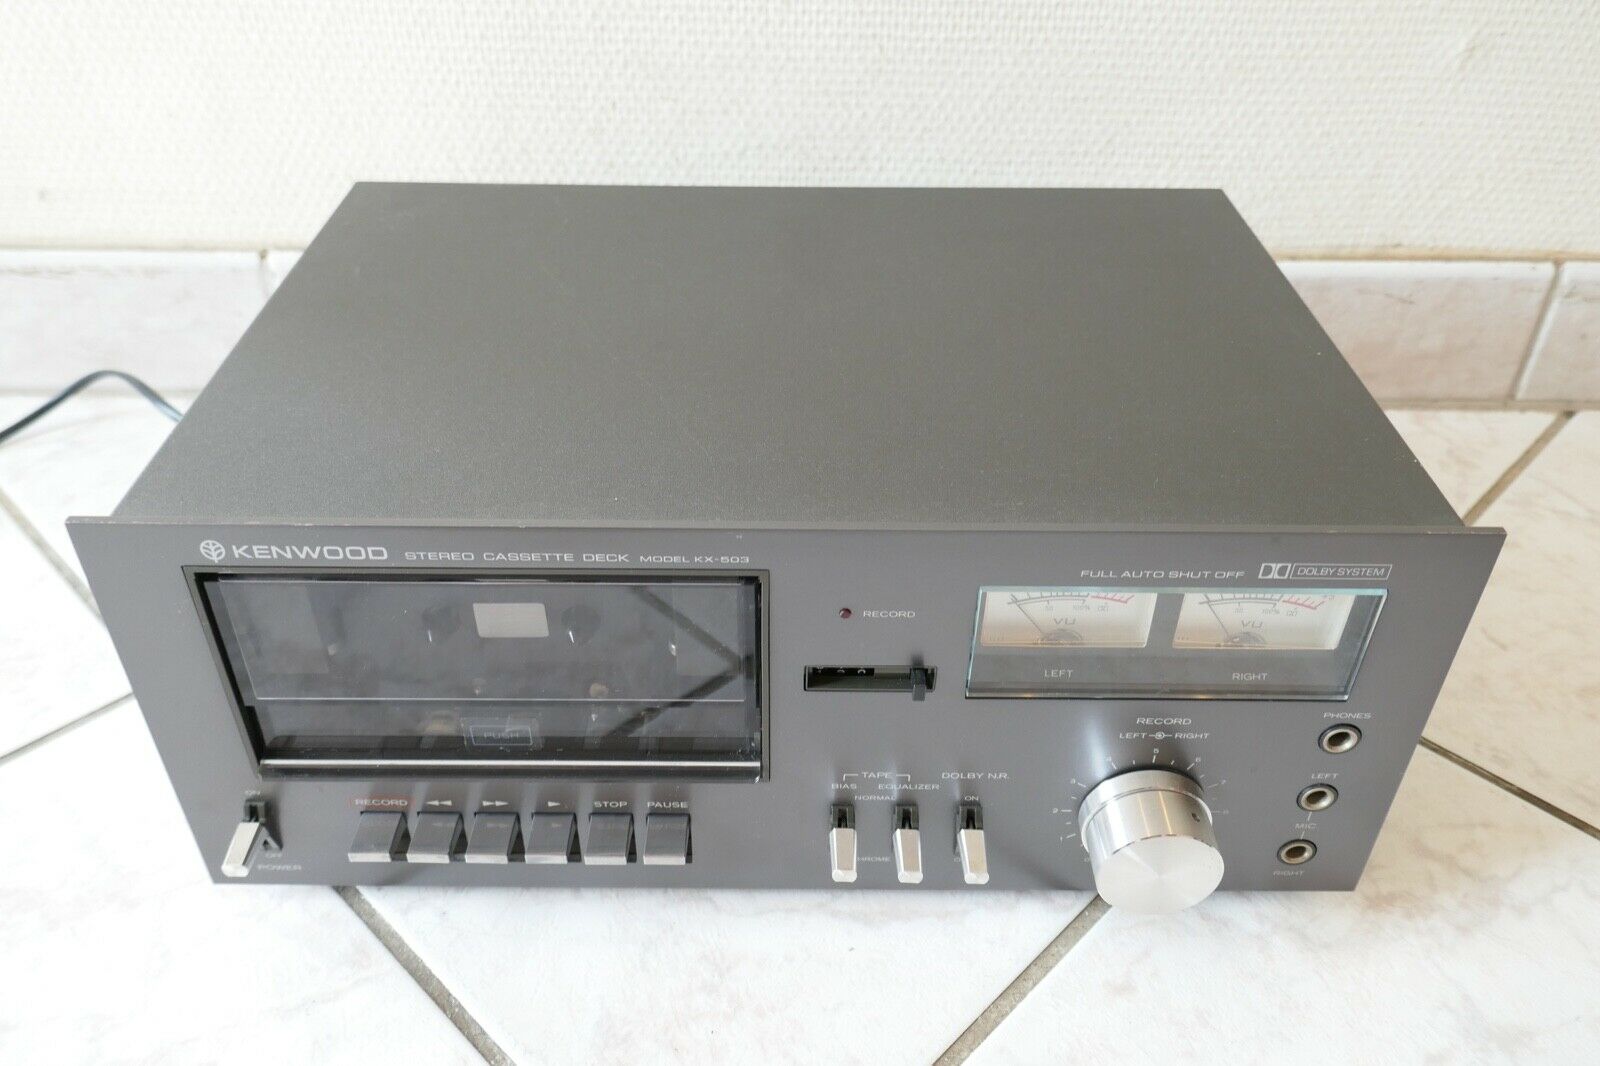 lecteur cassette kenwood KX-503 vintage occasion